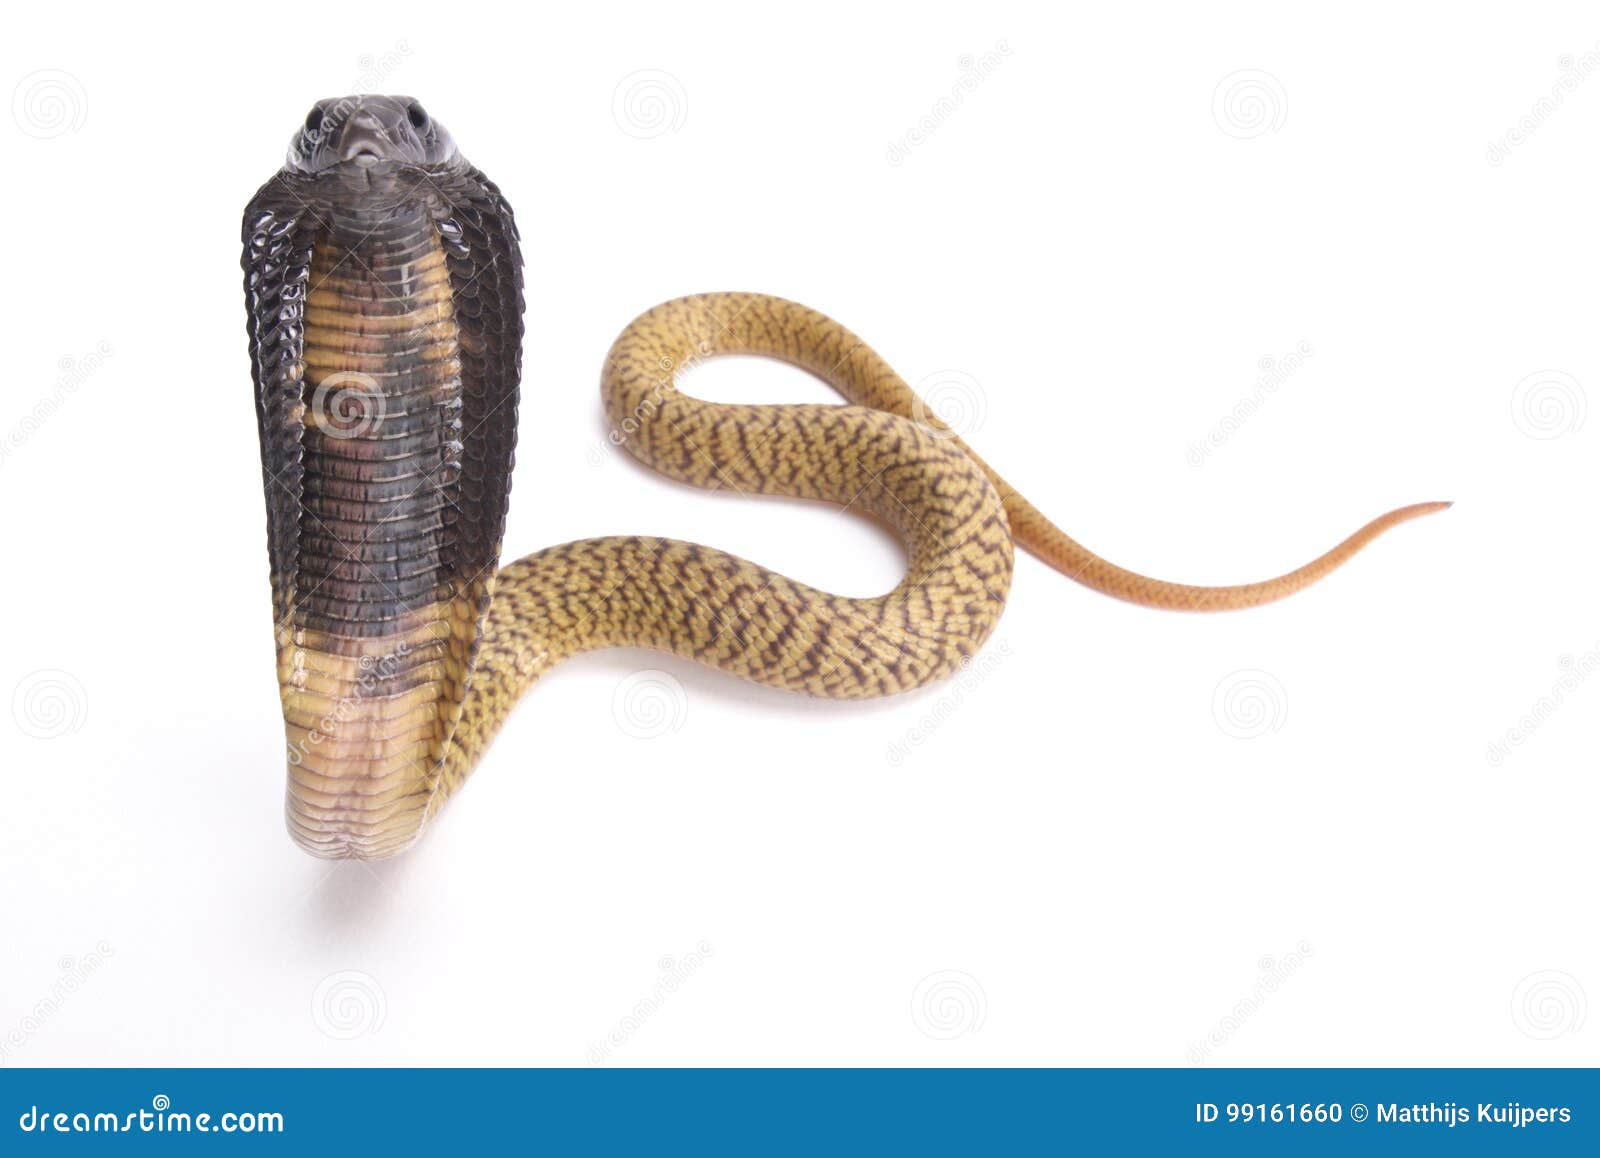 egyptian cobra, naja haje